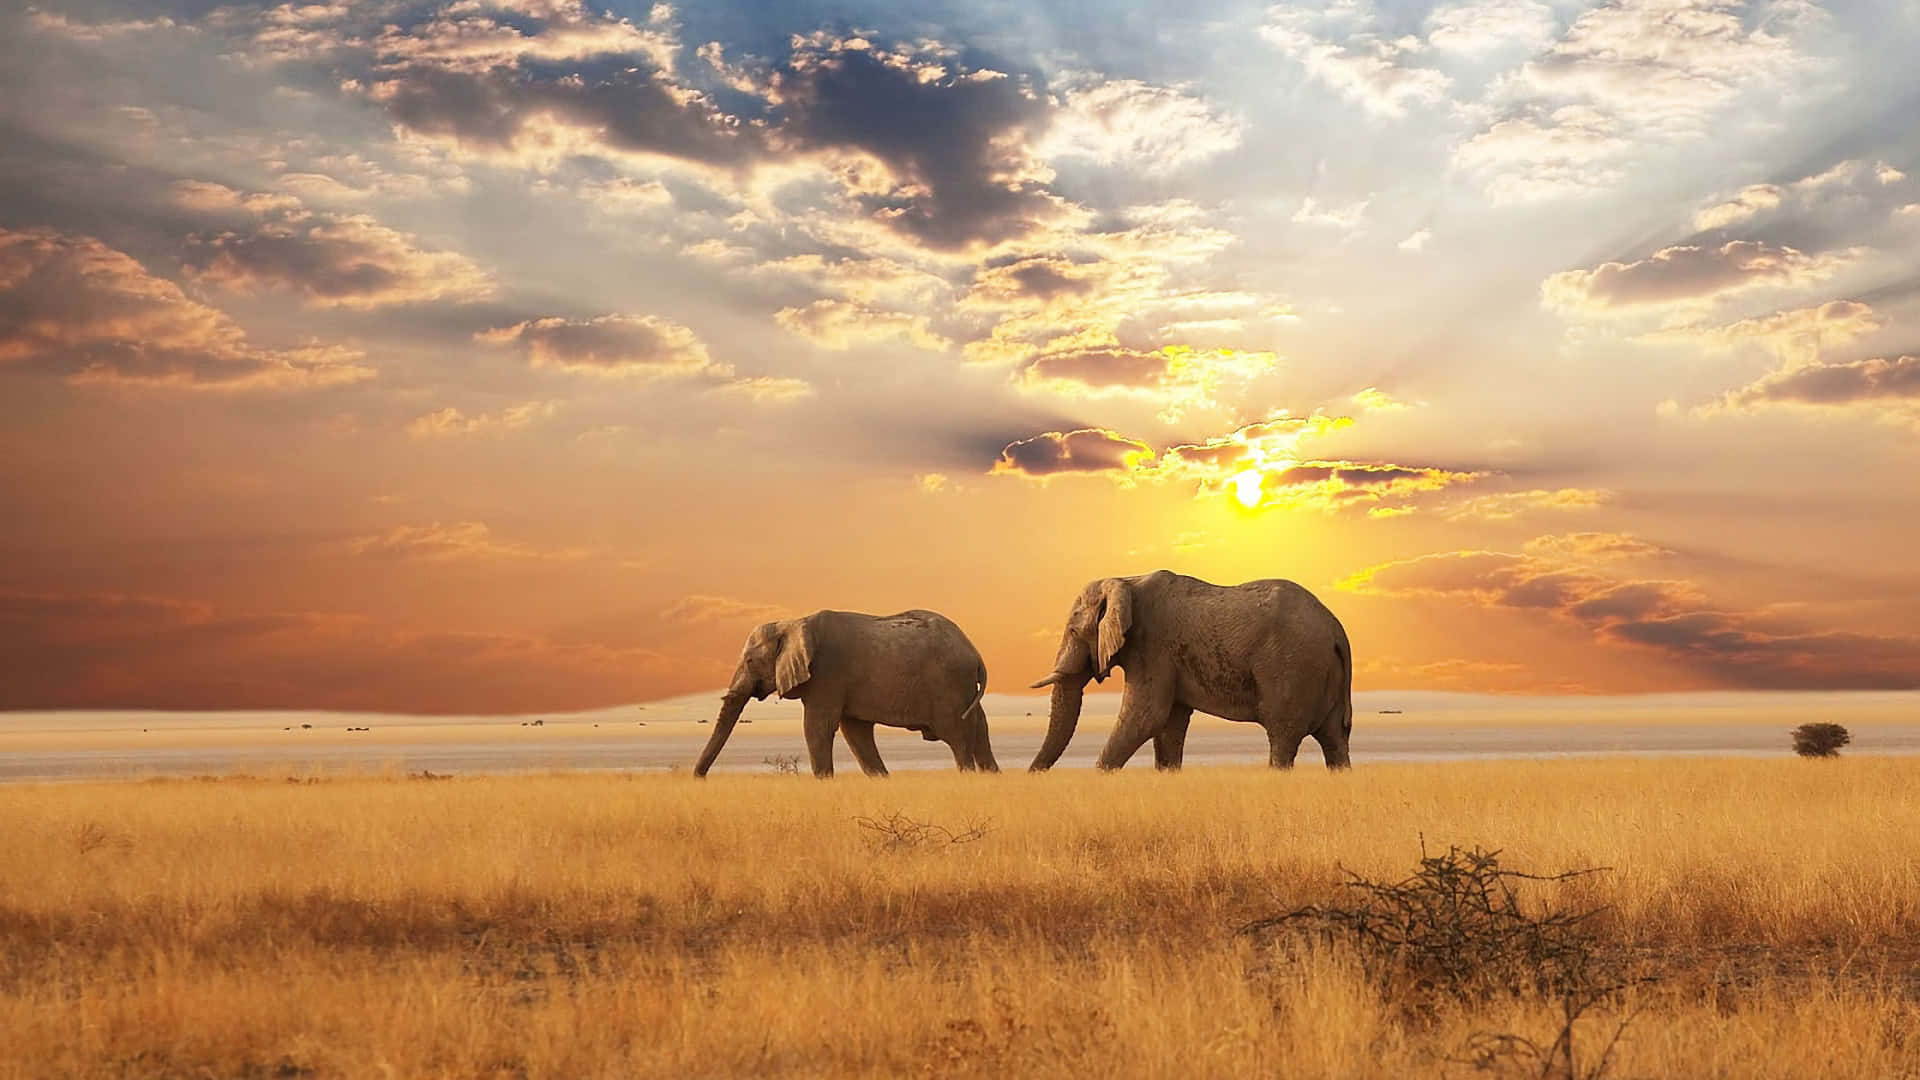 Elephants In Africa Hd Wallpaper